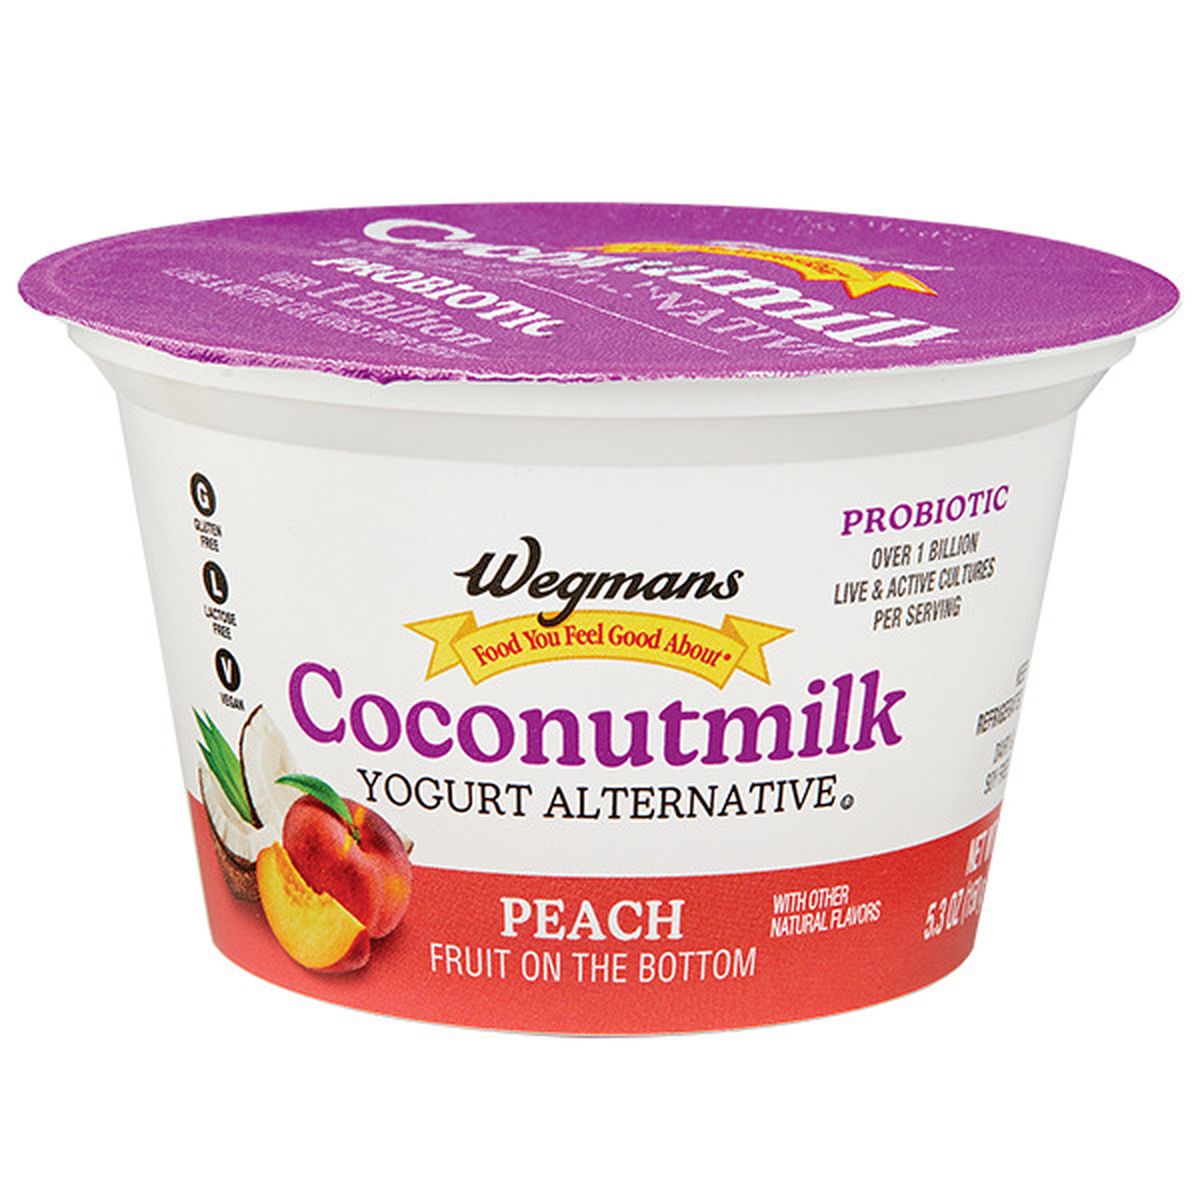 Calories in Wegmans Coconutmilk Yogurt Alternative, Peach